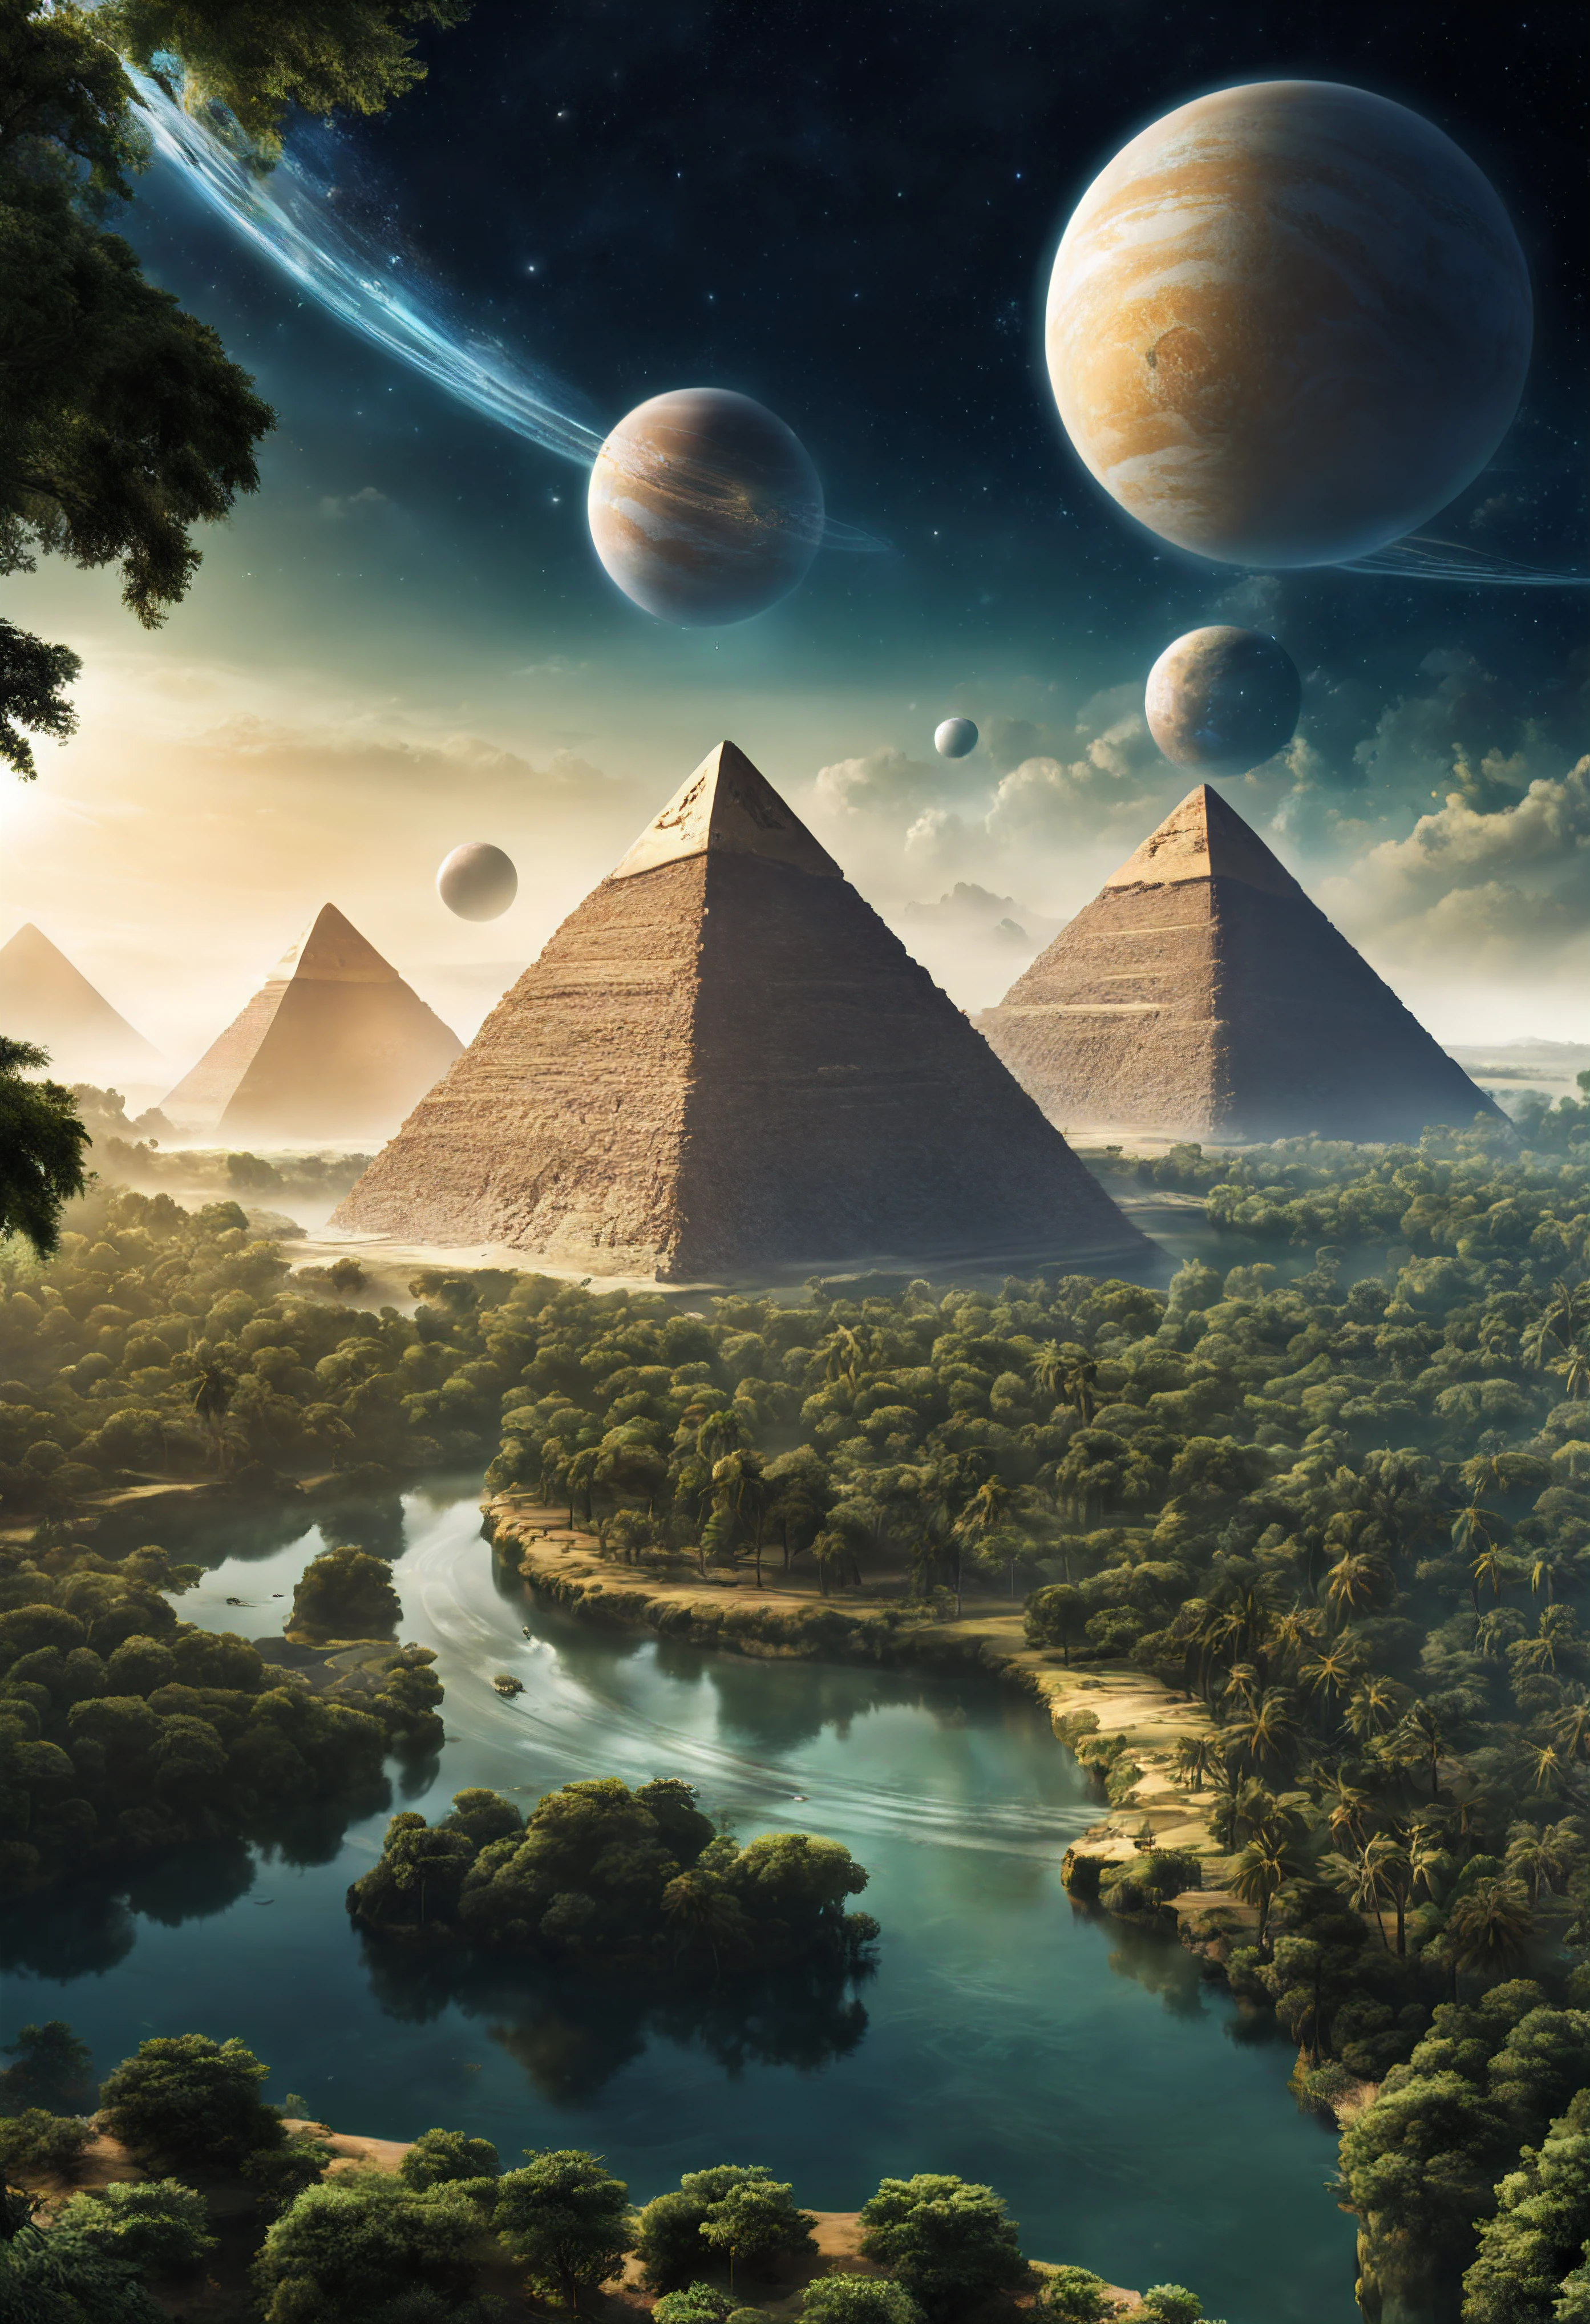 숲과 강이 있는 또 다른 행성, 피라미드와 파라오가 있는 곳에는 외계인이 있다, 이집트 피라미드 형태의 우주선, 두 개의 위성 행성이 하늘에서 볼 수 있습니다.